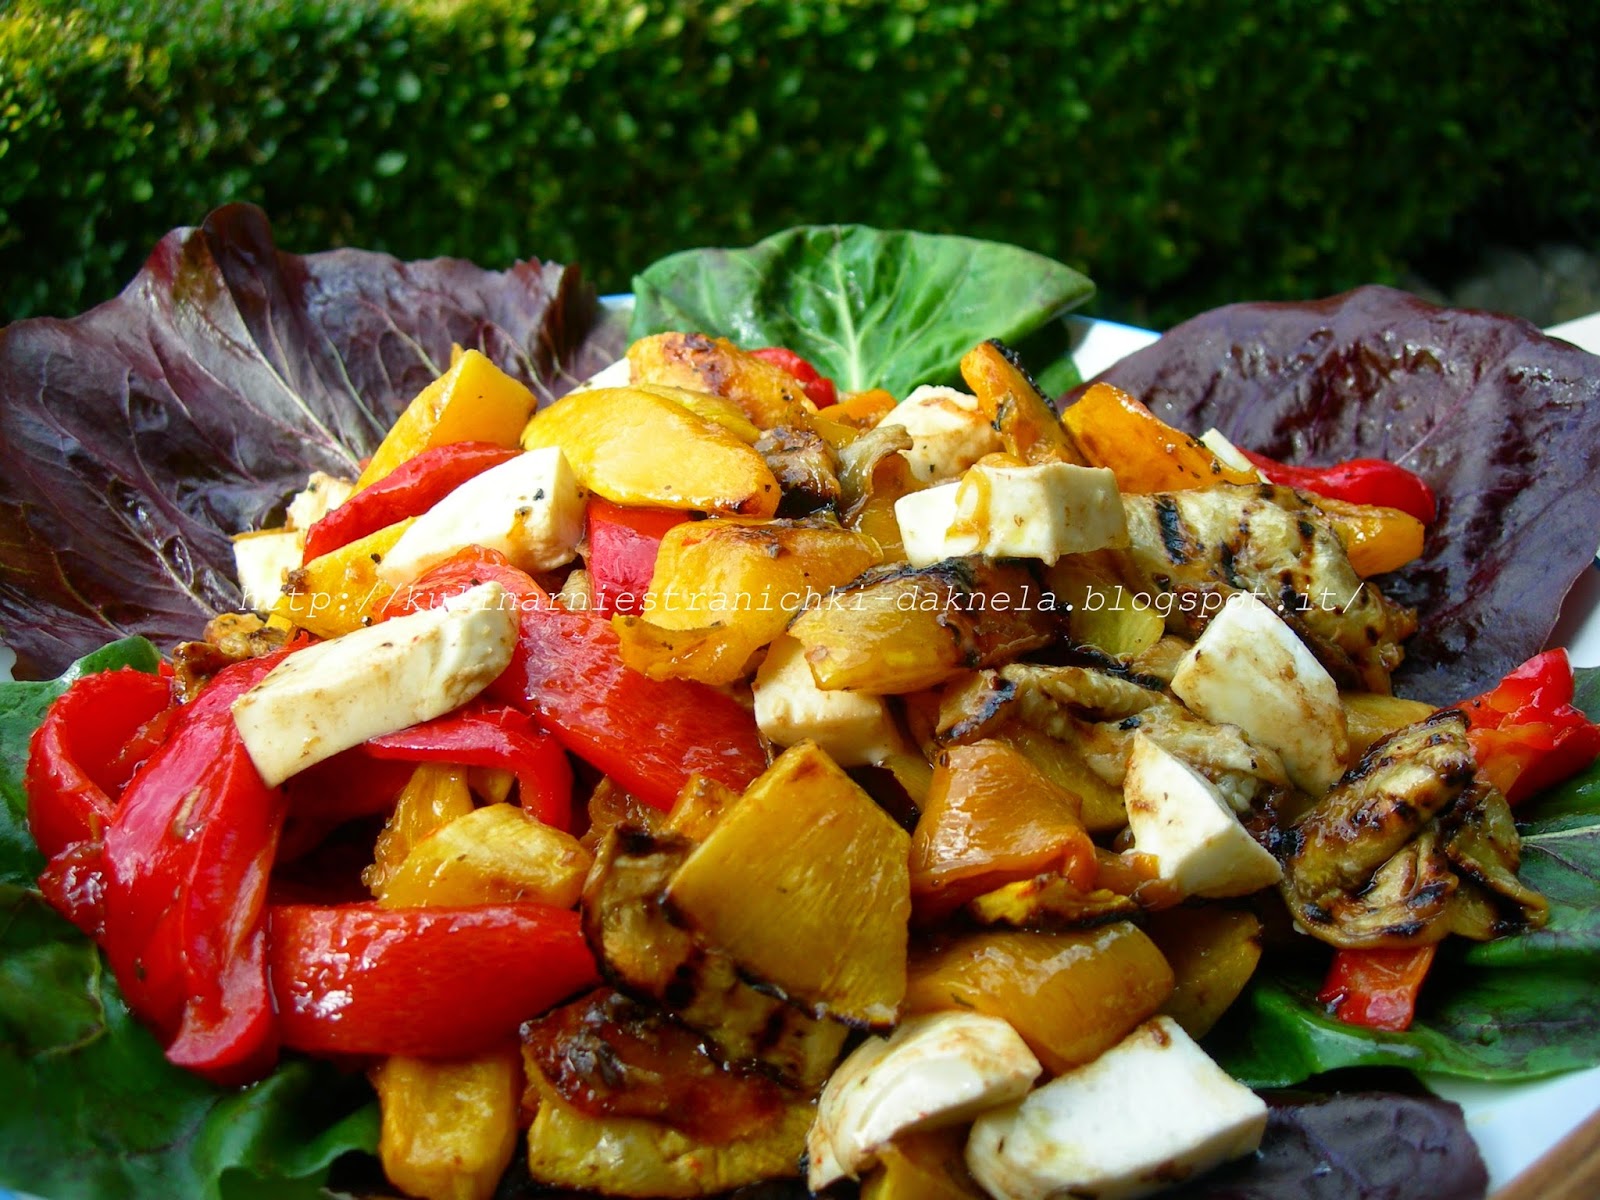 Армянский салат из овощей 4 буквы. Салат с овощами гриль. Салат из печеных овощей в духовке. С печеными овощами и моцареллой. Армянский салат из печеных овощей в духовке.